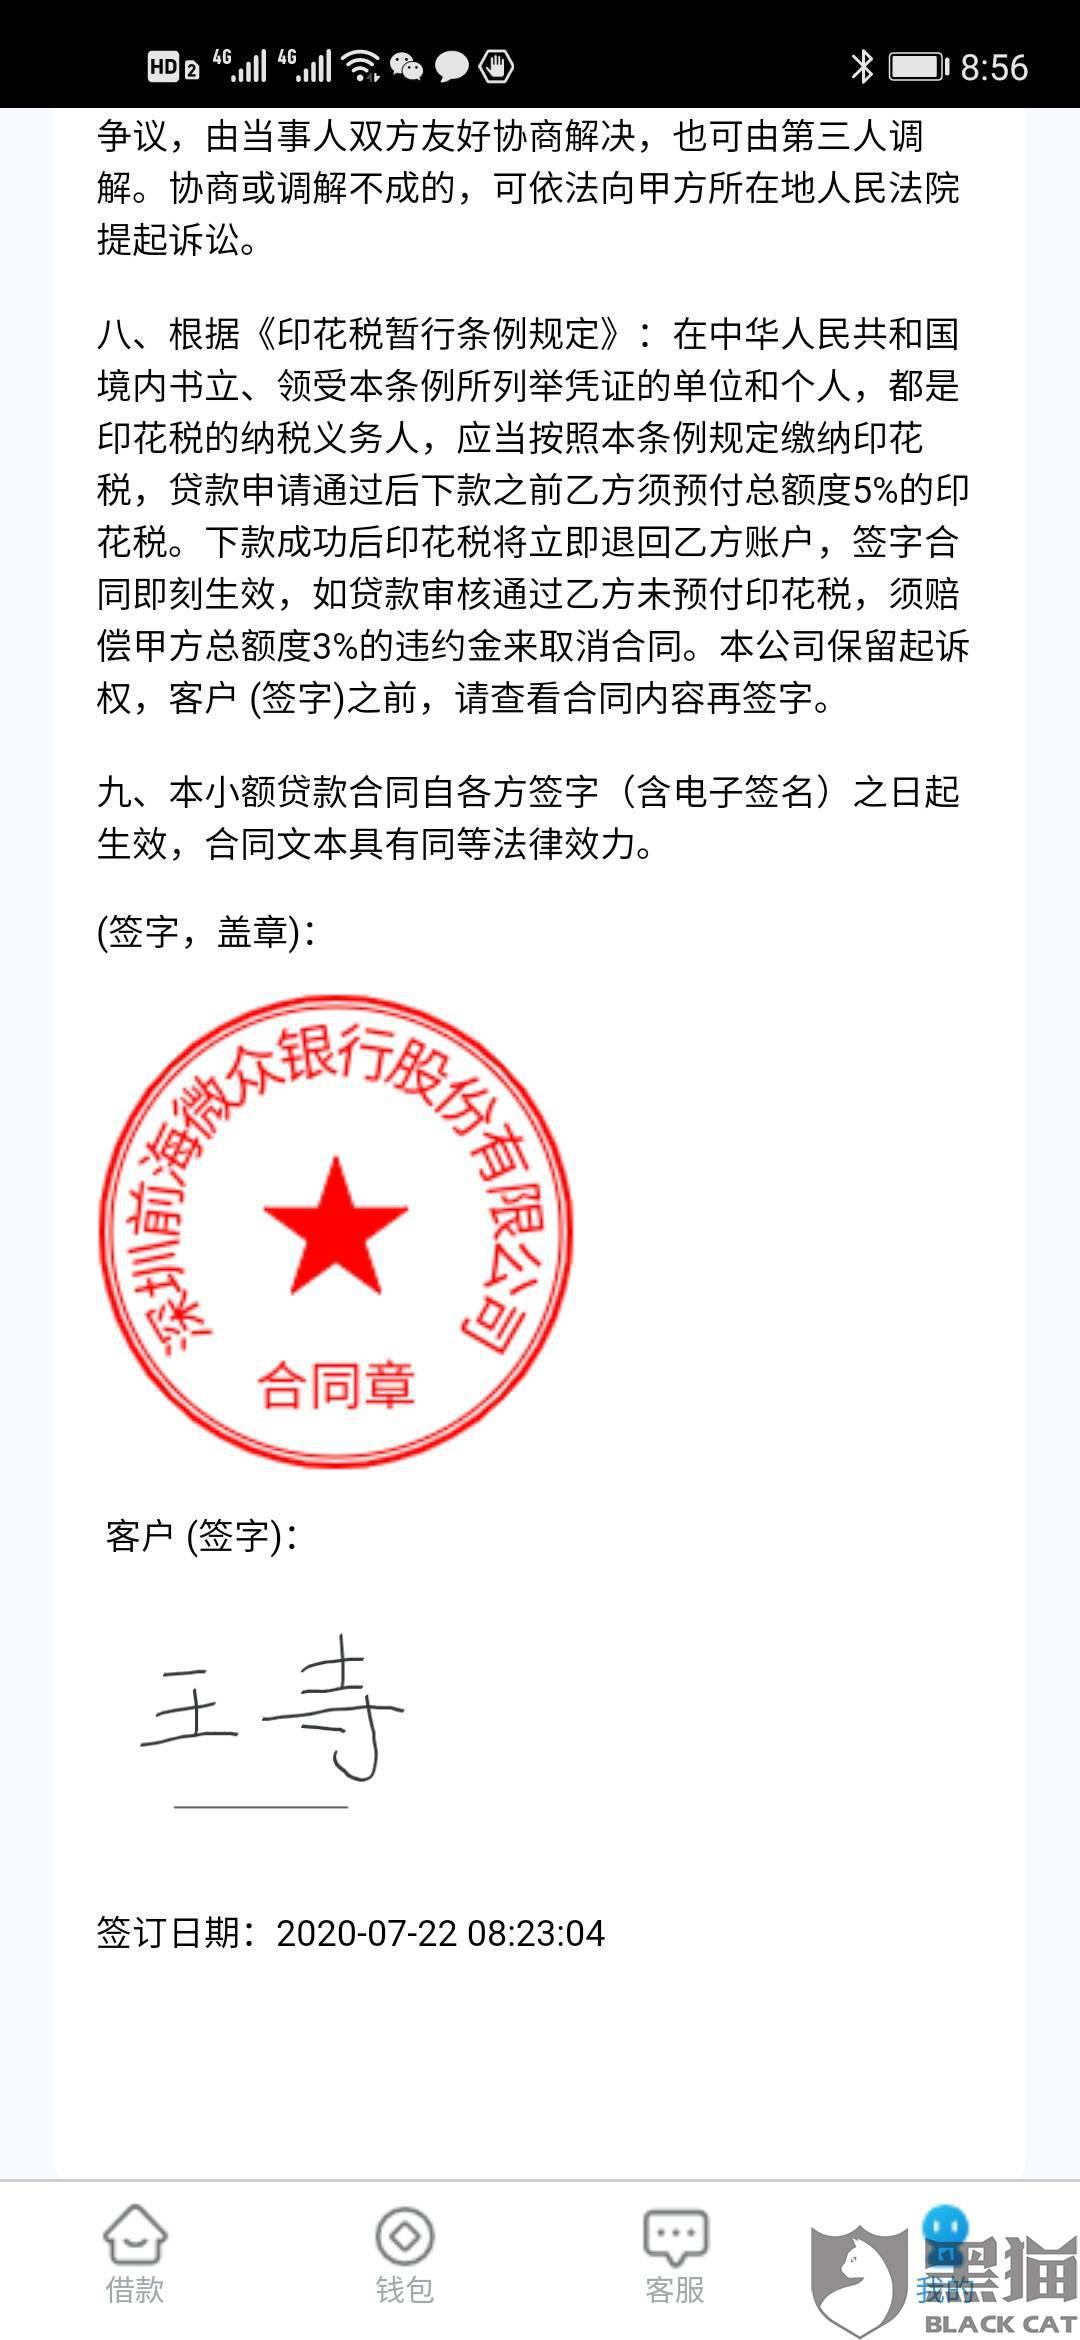 黑猫投诉:要求深圳前海微众银行股份有限公司撤销签订